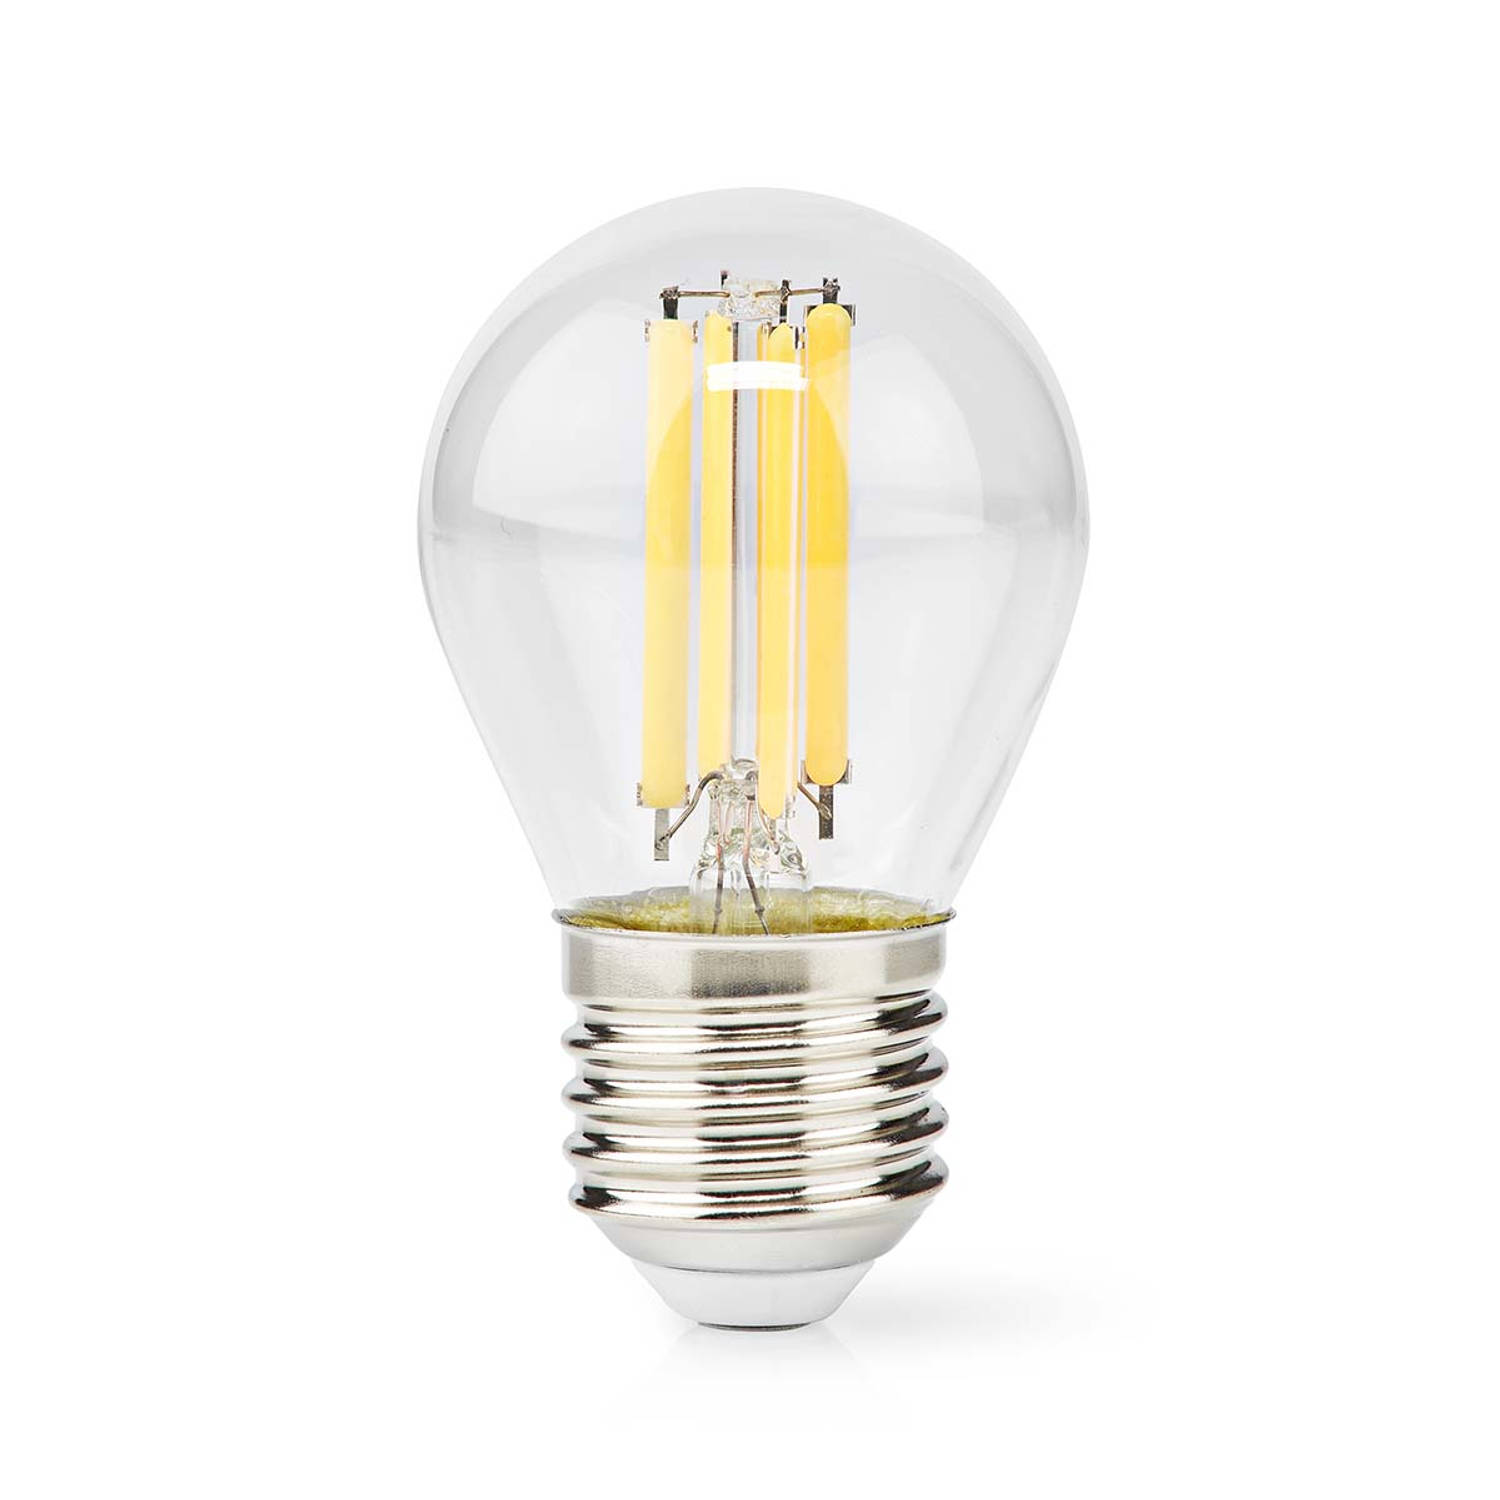 LED-Filamentlamp E27 | G45 | 7 W | 806 lm | 2700 K | 1 stuks LBFE27G453